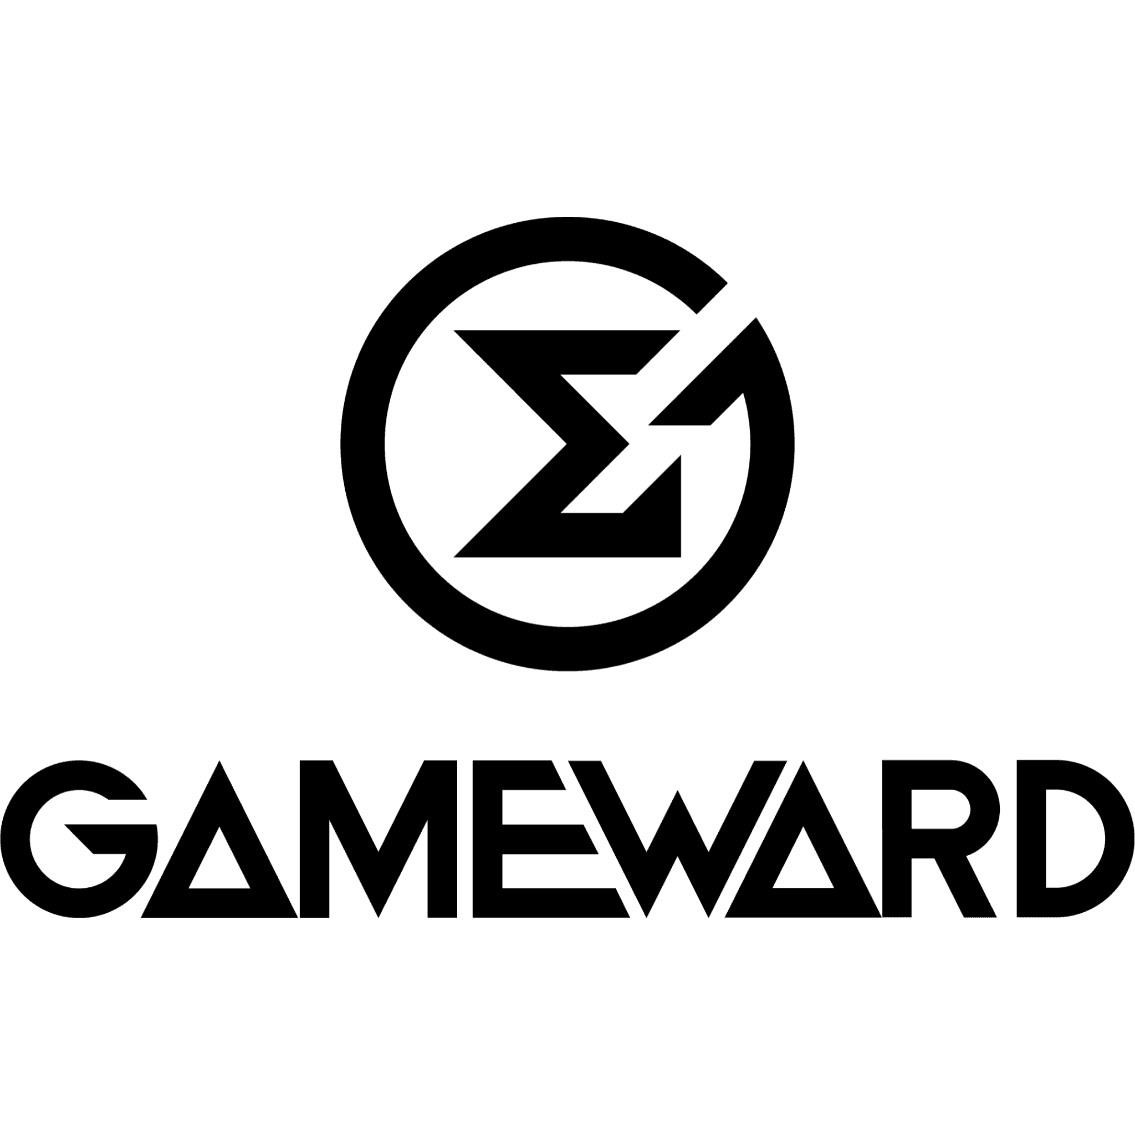 GameWardのロゴタイプ